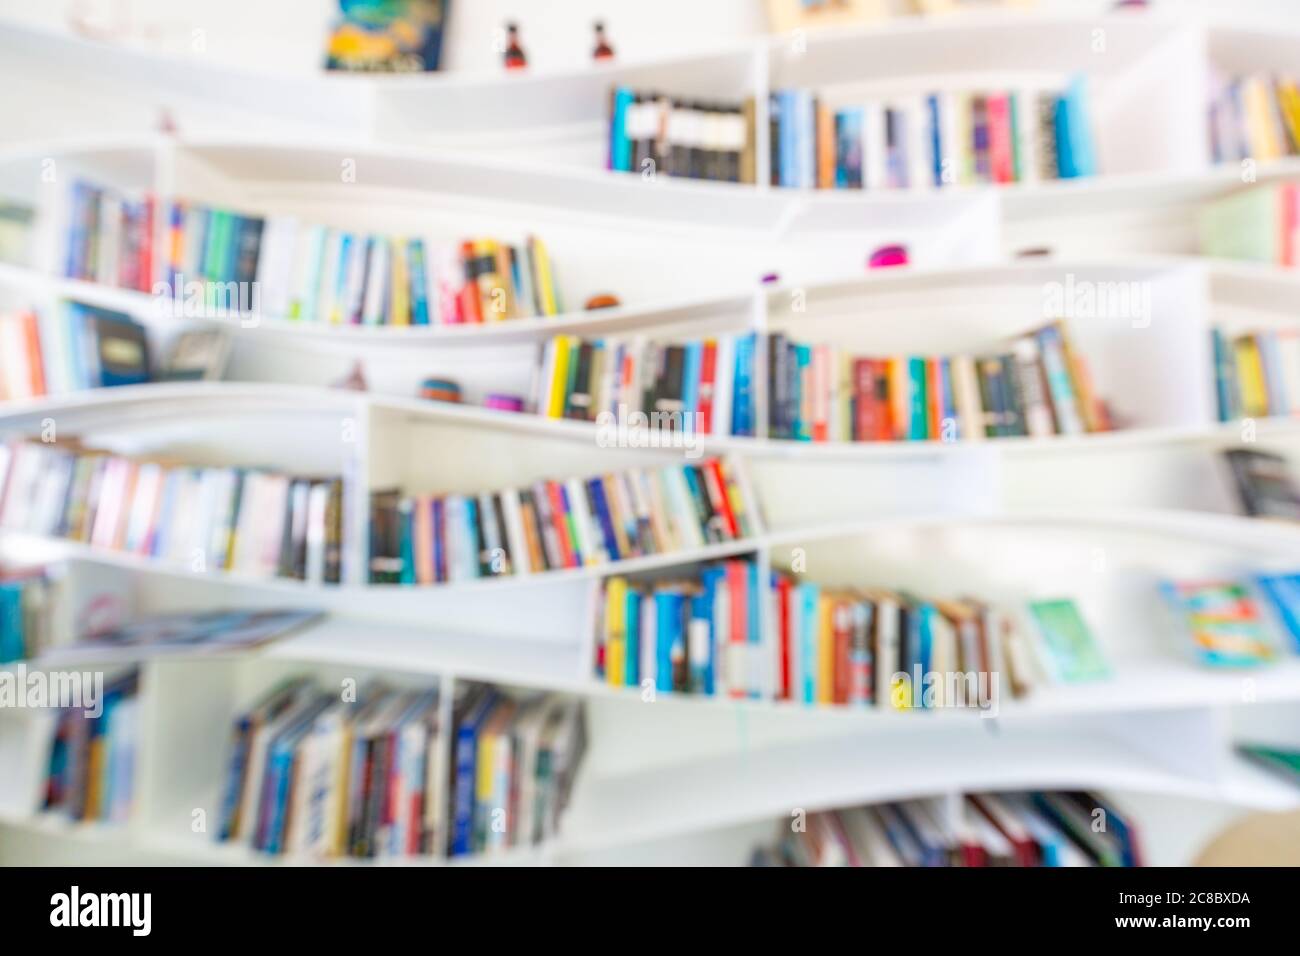 Librerie offuscate astratte con libri, manuali e libri di testo su librerie in biblioteca o in libreria, soft focus. Concetto di apprendimento, scuola Foto Stock